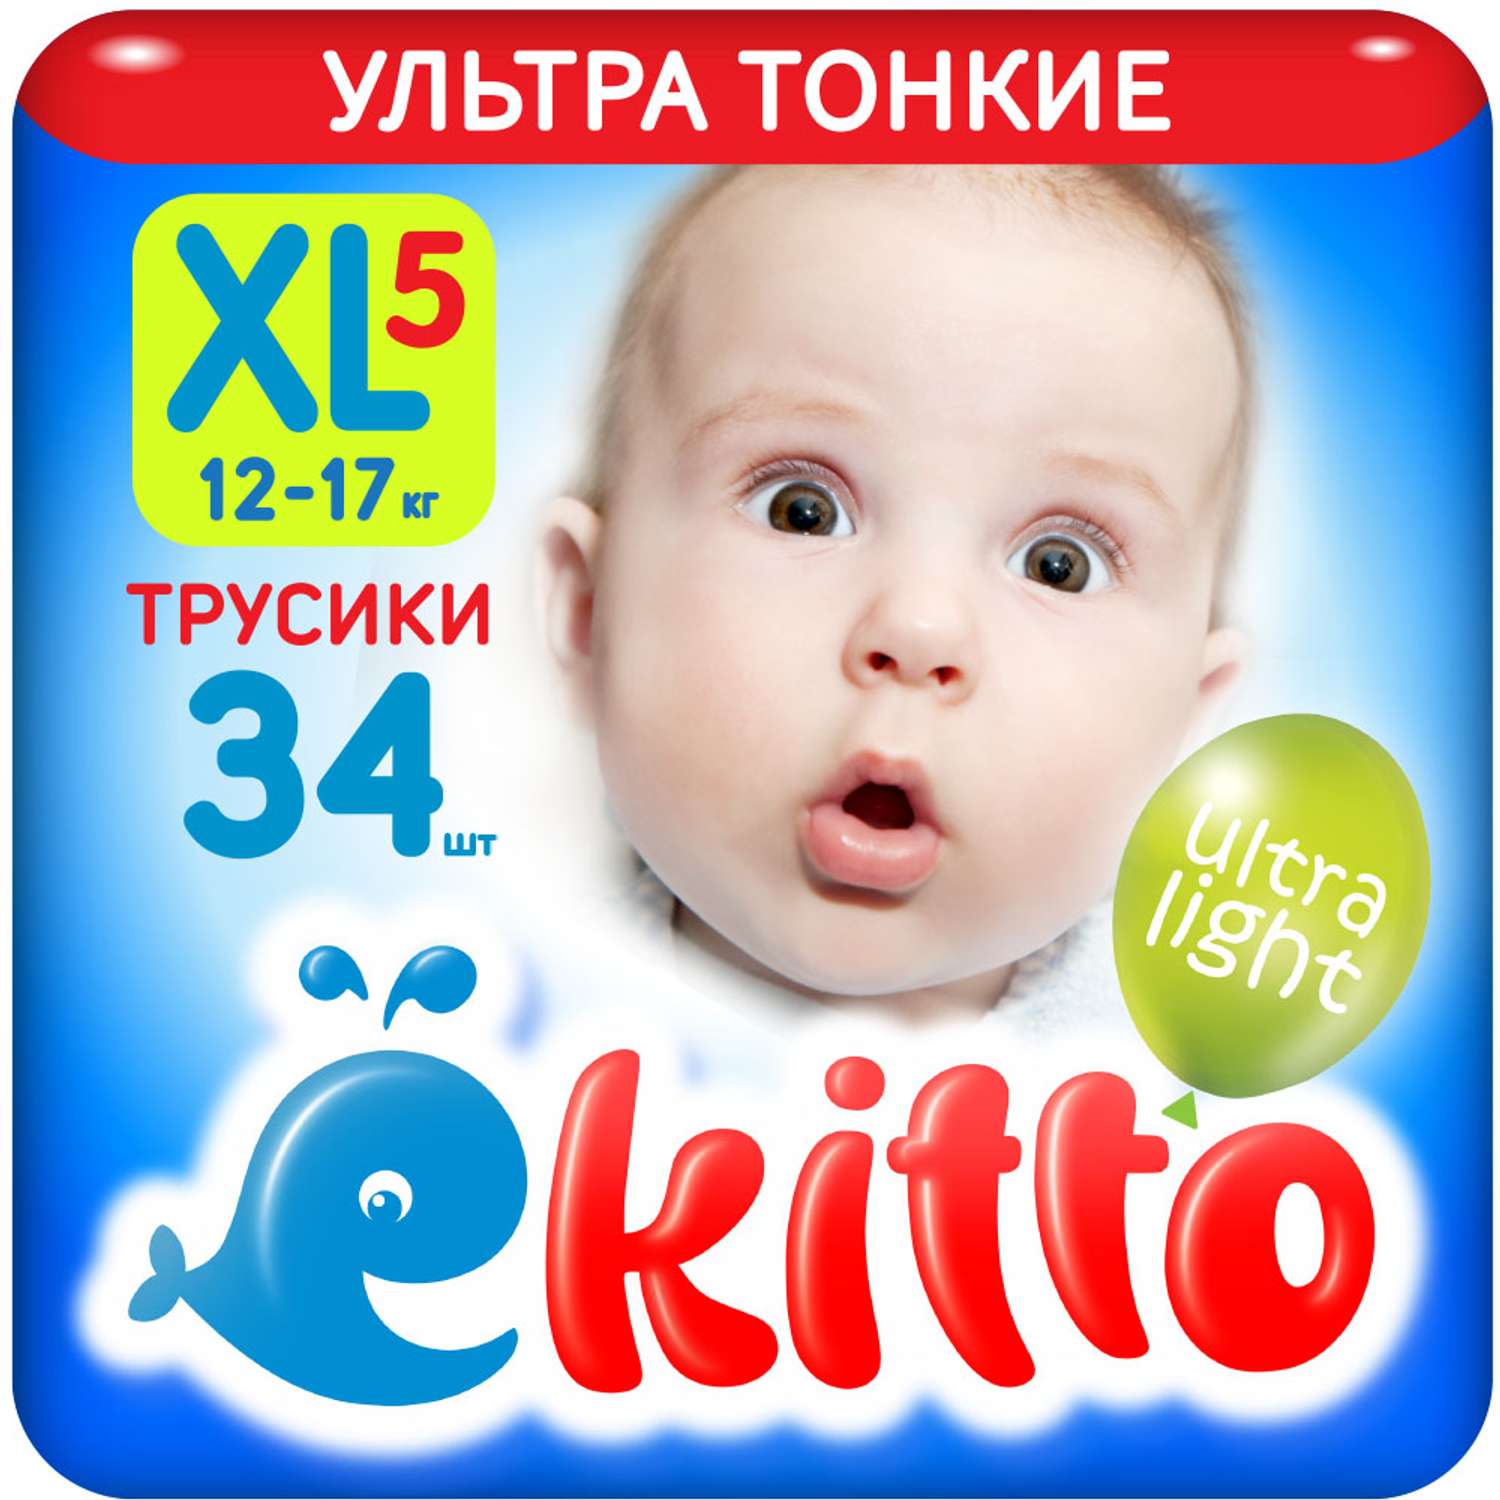 Подгузники трусики Ekitto 5 размер XL для новорожденных детей от 12-17 кг 34 шт - фото 1